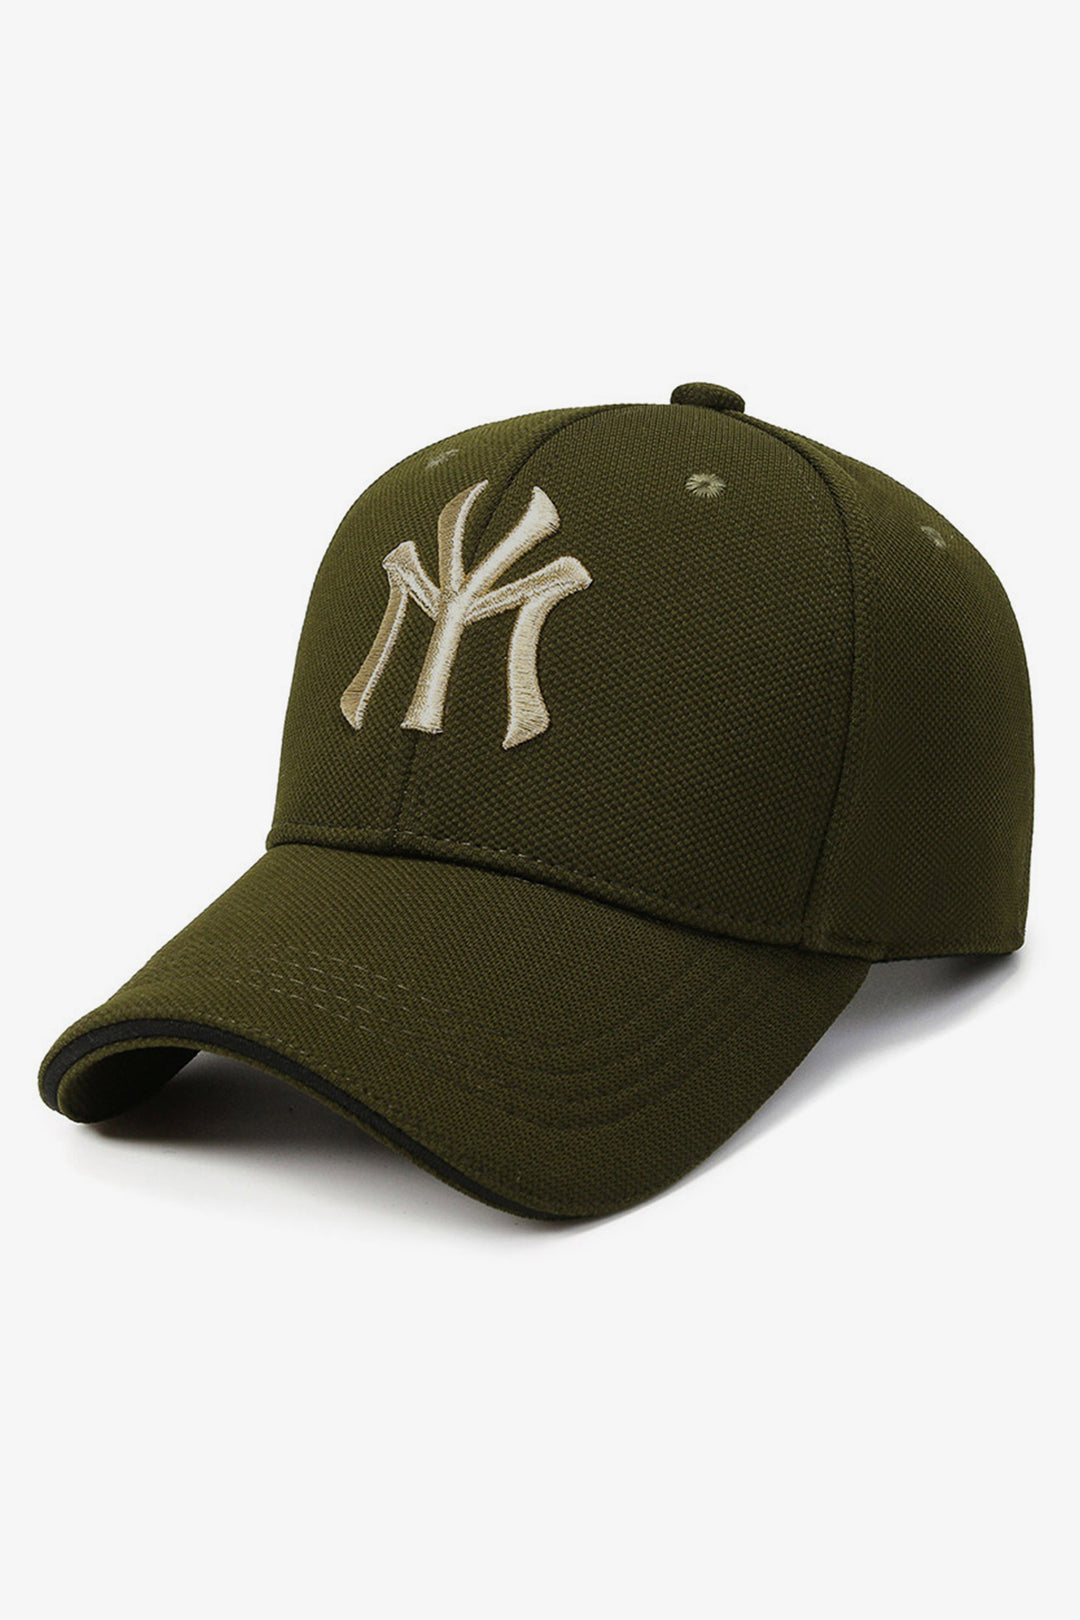 NY Classic Army Green Baseball Cap - S23 - MCP082R